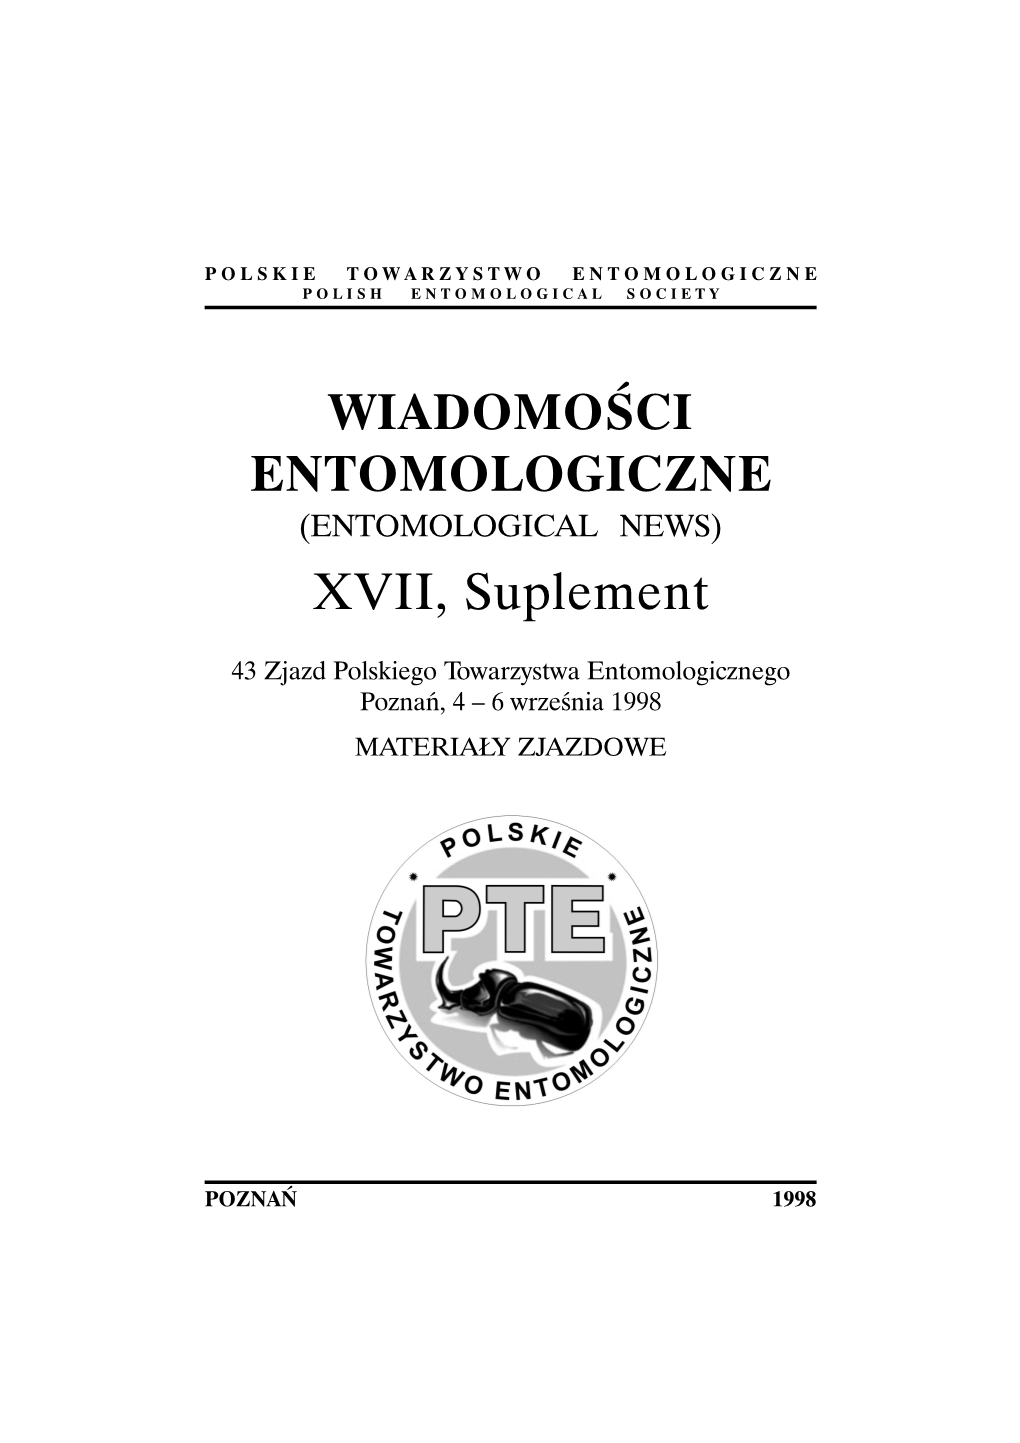 WIADOMOŚCI ENTOMOLOGICZNE XVII, Suplement